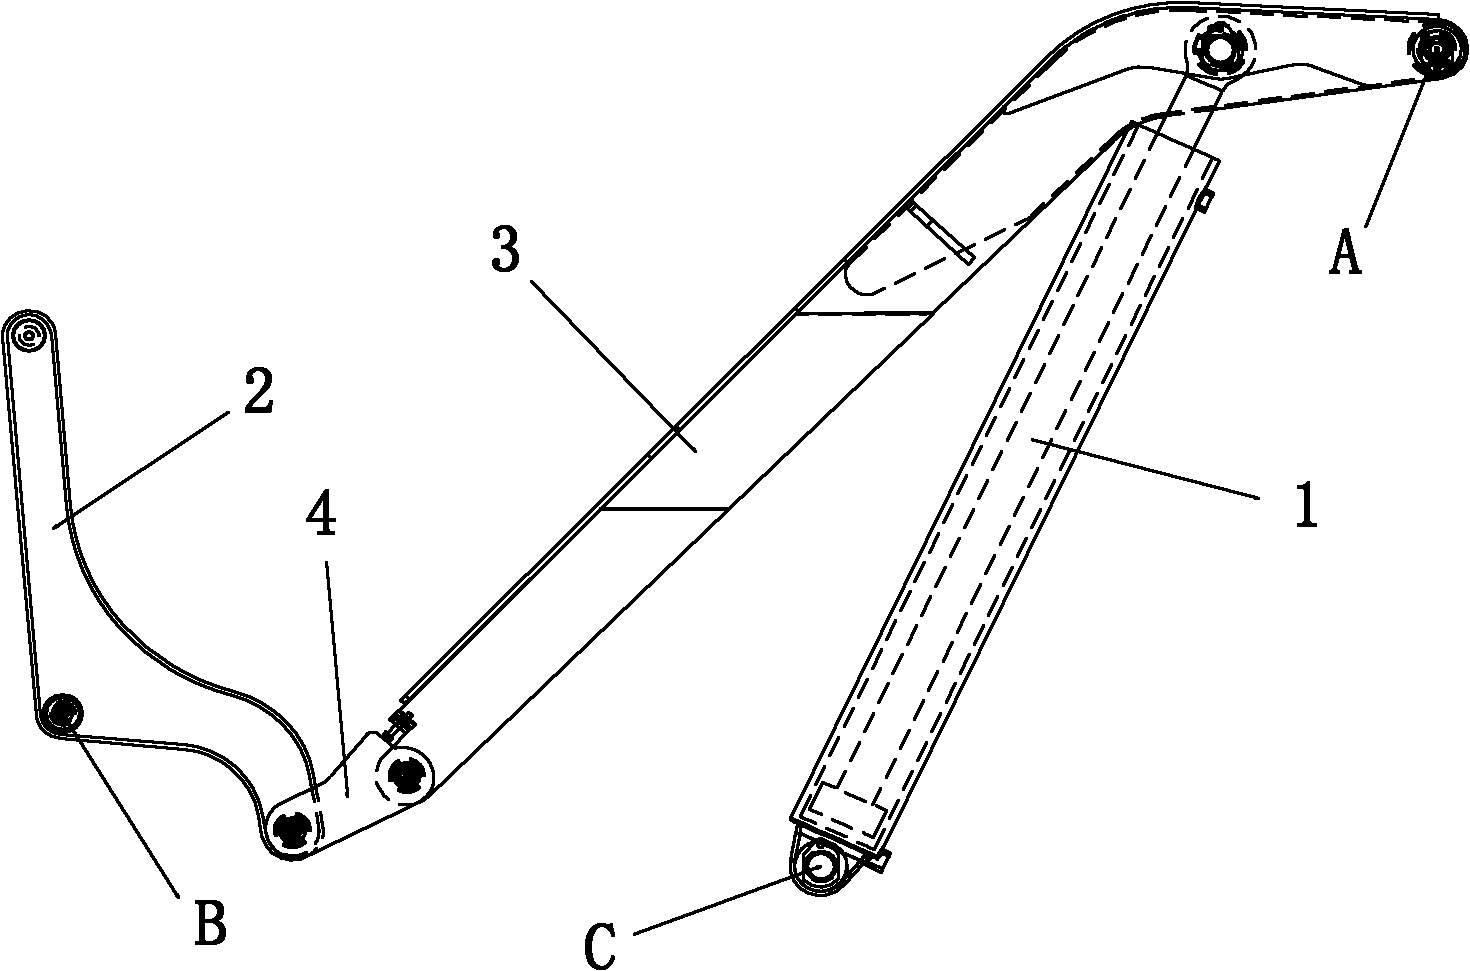 Six-bar mechanism of dumper lifting device